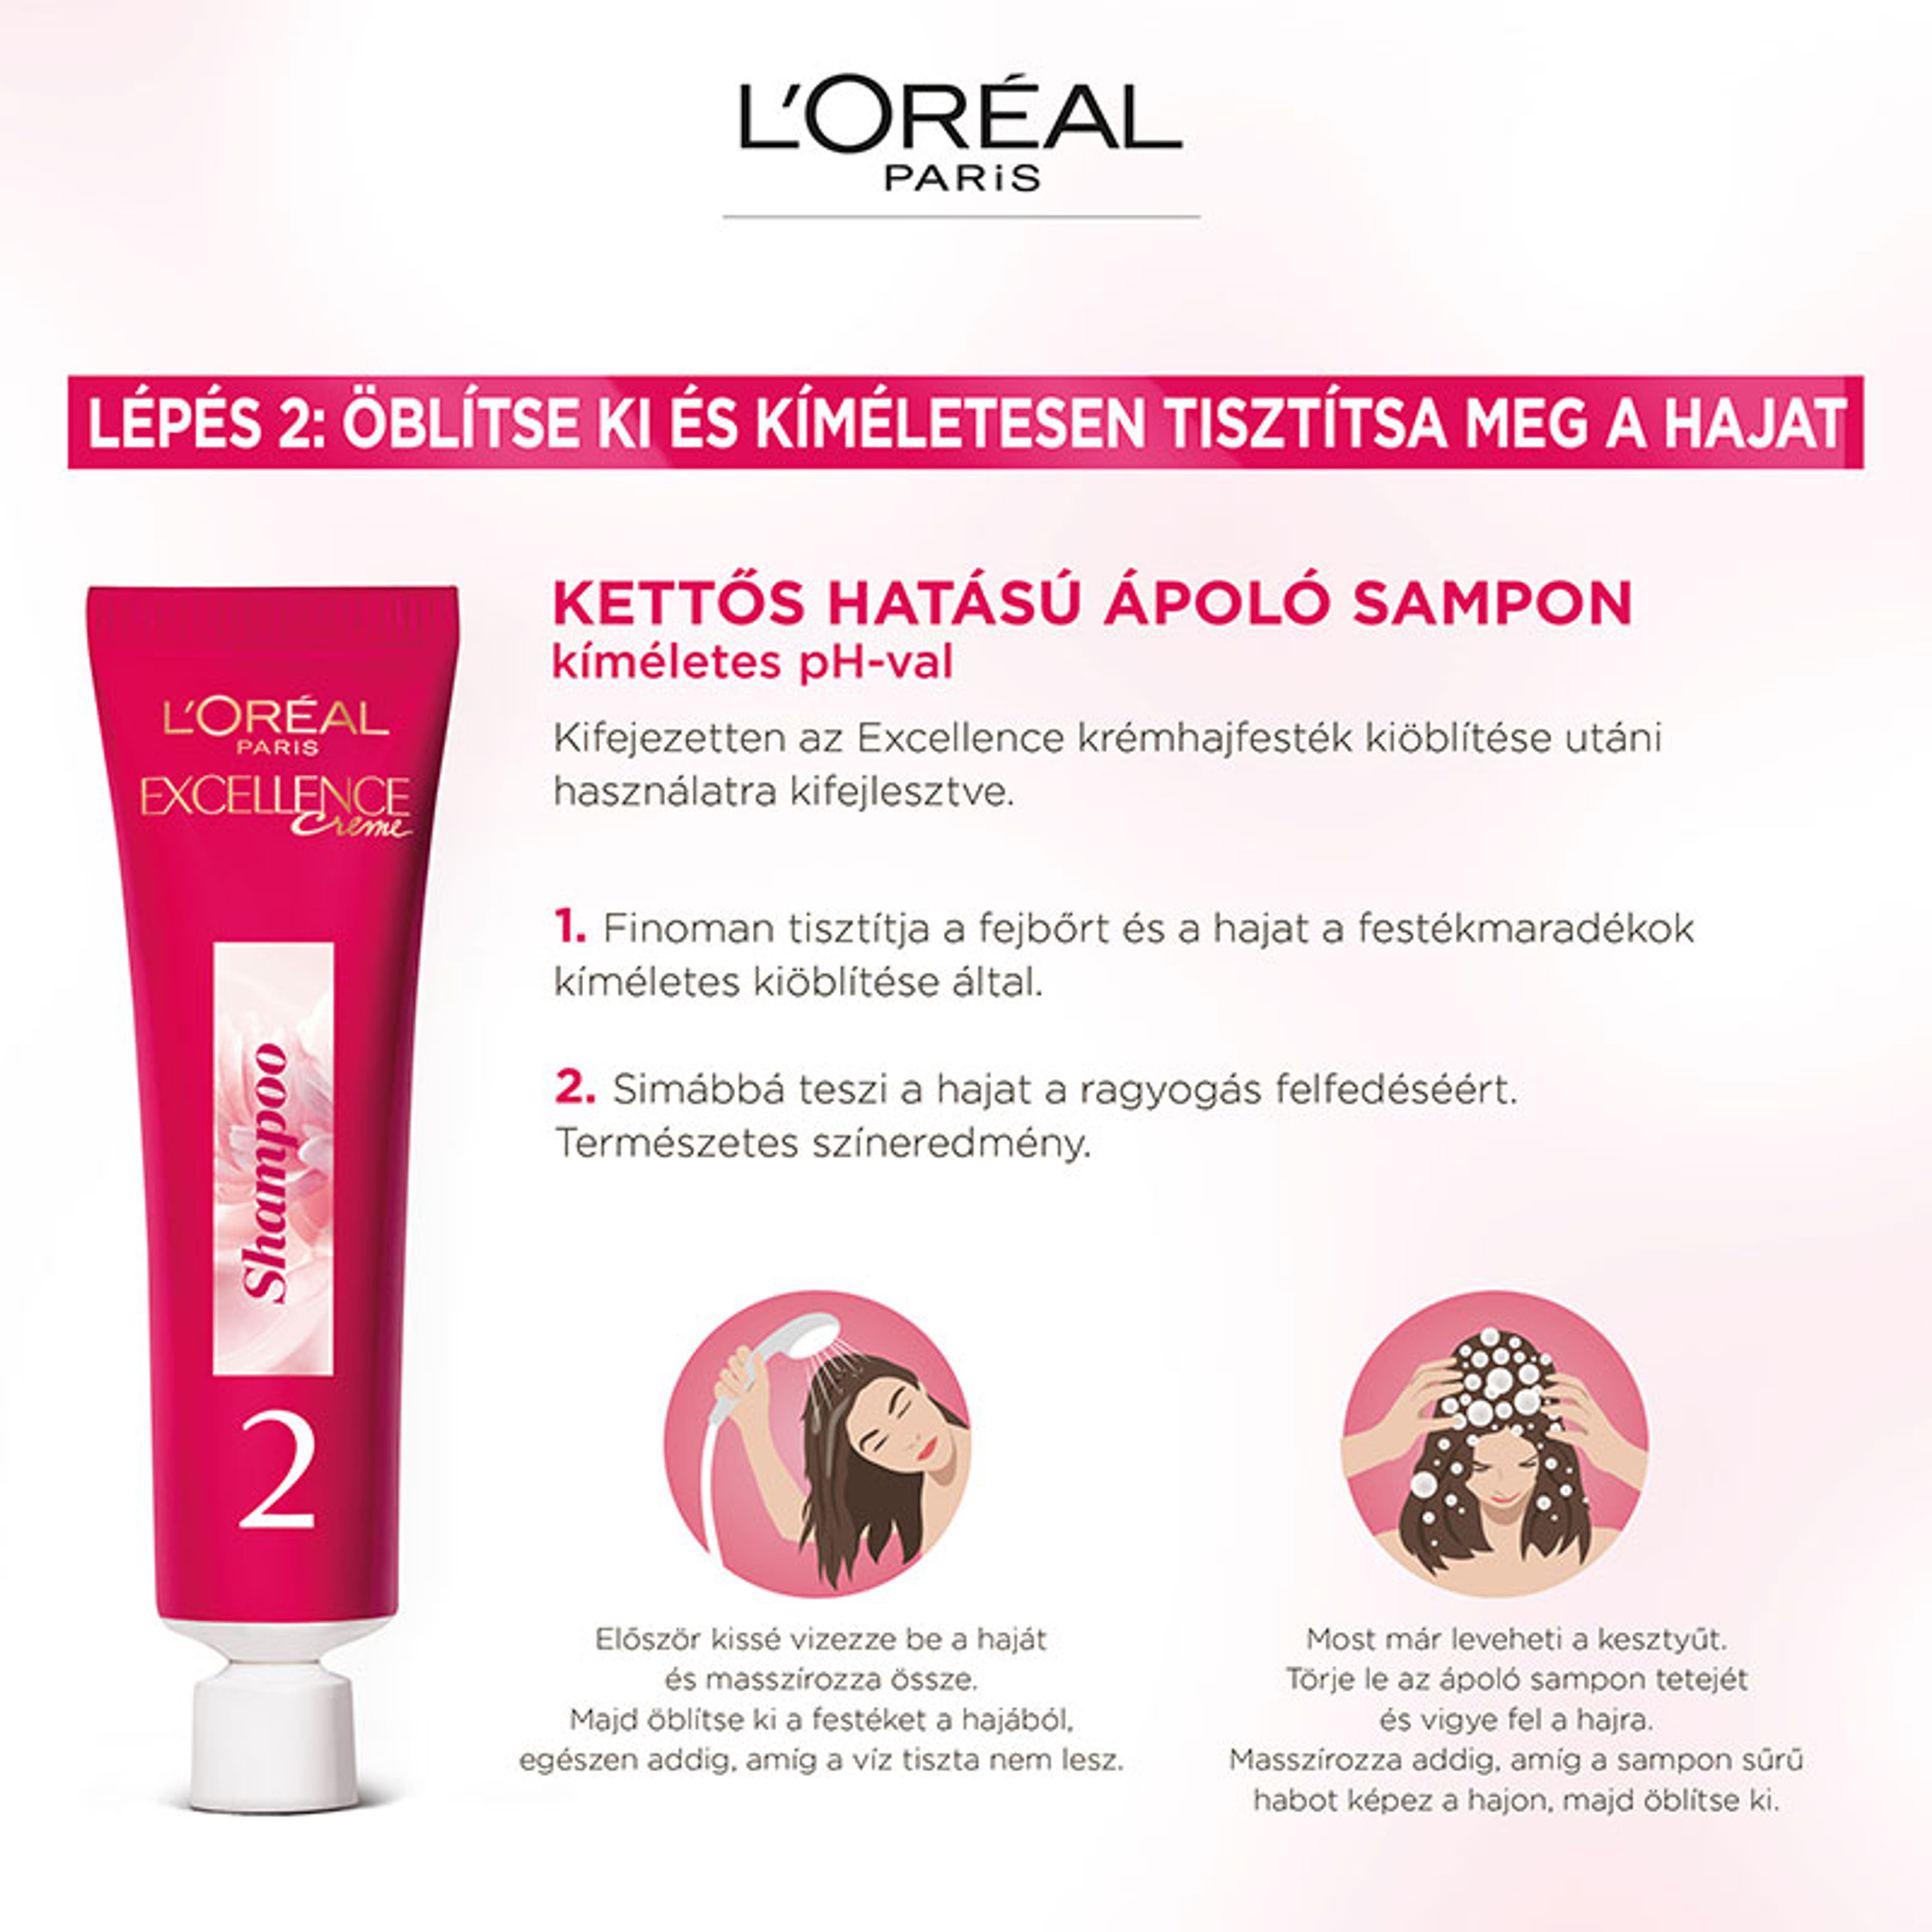 L'Oréal Paris Excellence krémes, tartós hajfesték 6.1 sötét hamvasszőke - 1 db-12